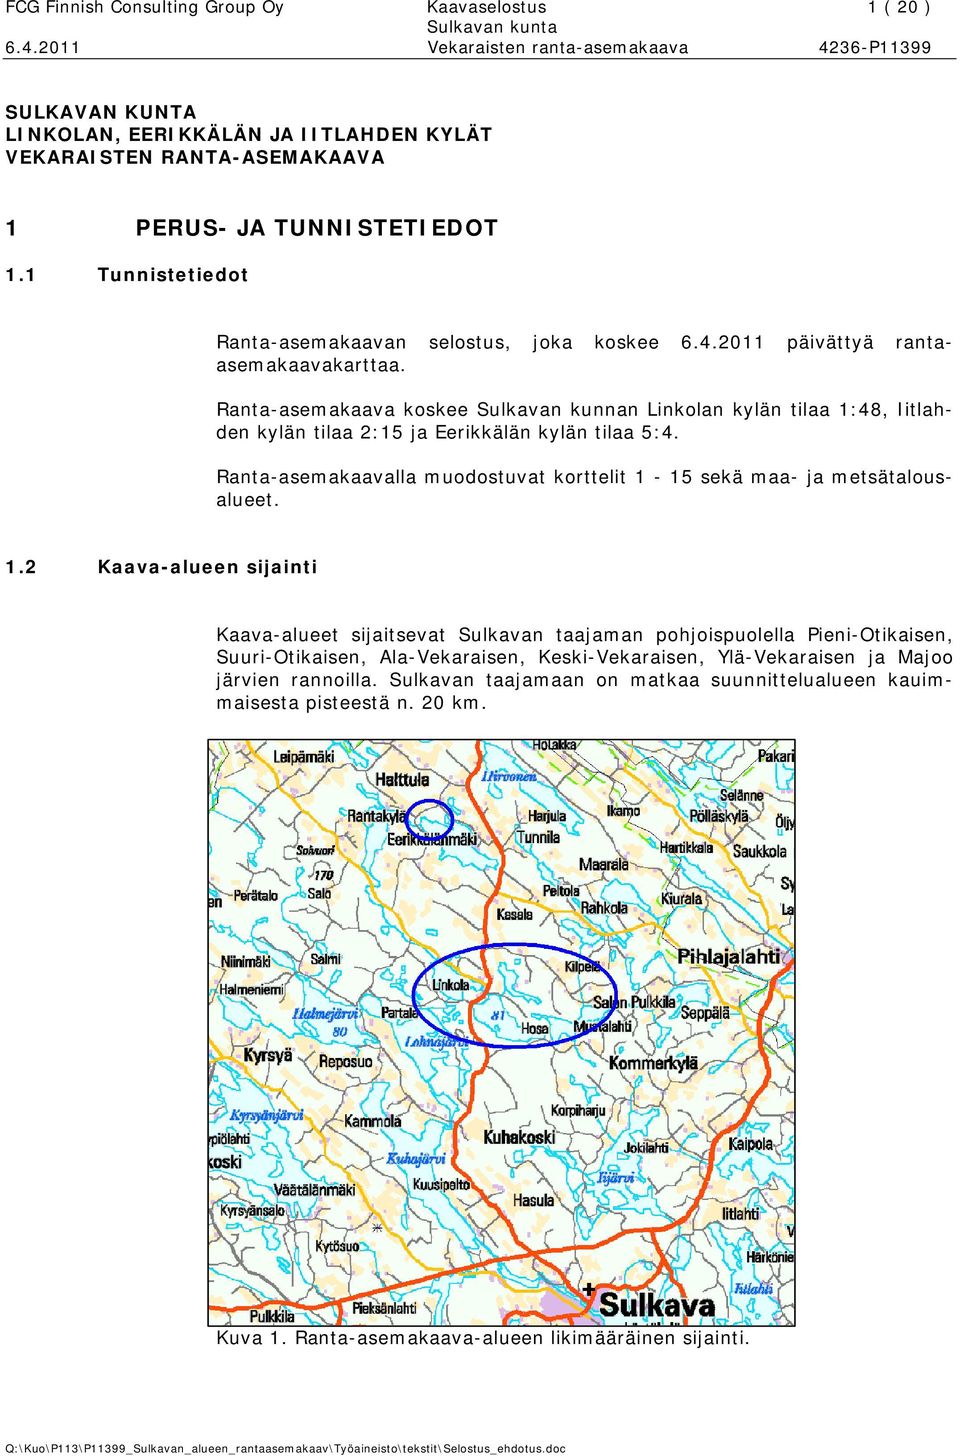 Ranta-asemakaava koskee Sulkavan kunnan Linkolan kylän tilaa 1:48, Iitlahden kylän tilaa 2:15 ja Eerikkälän kylän tilaa 5:4.